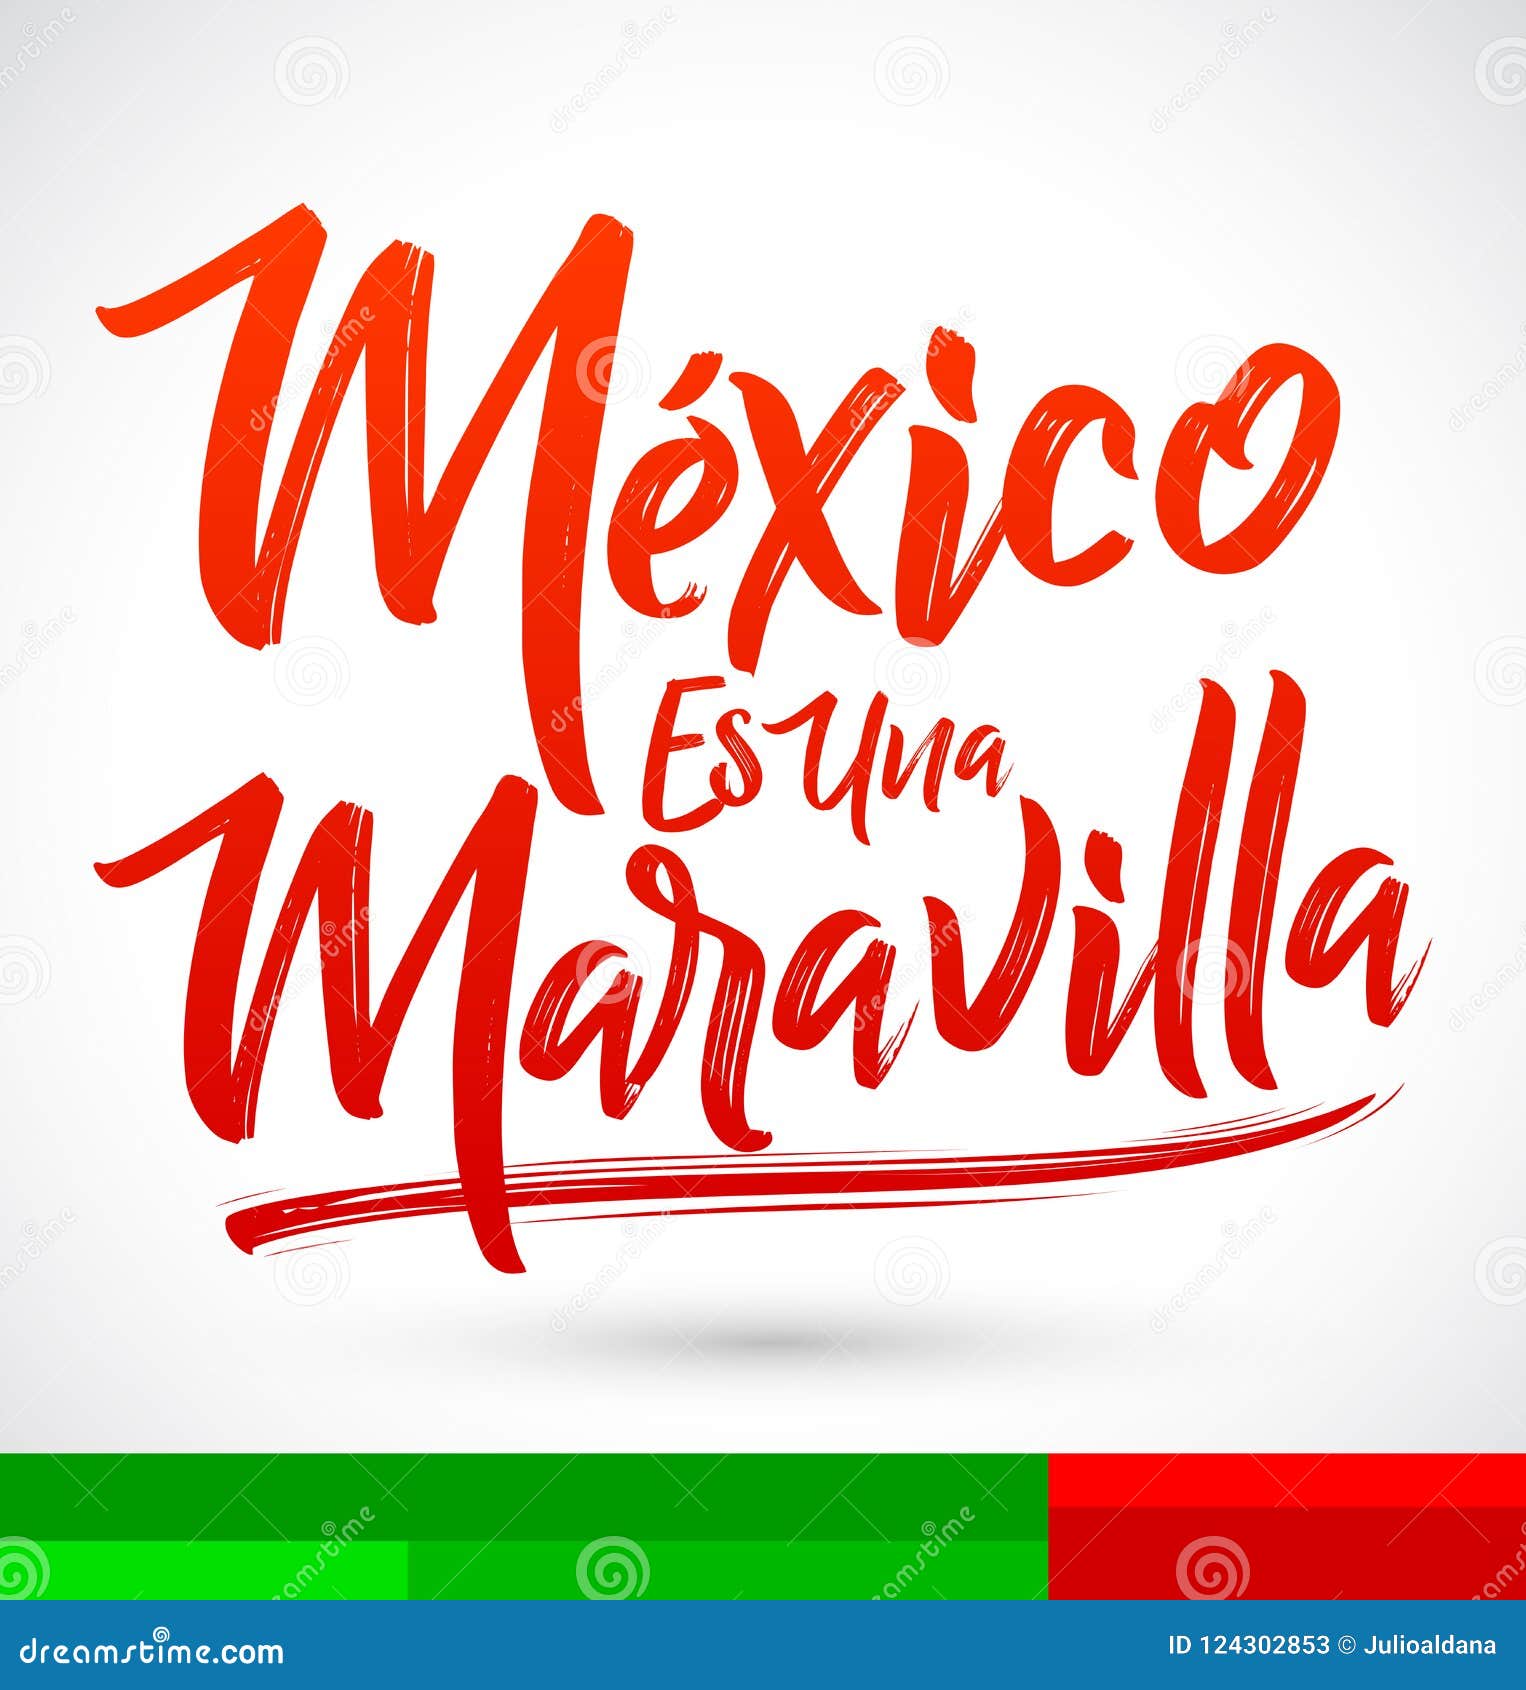 mexico es una maravilla, mexico is a wonder, spanish text